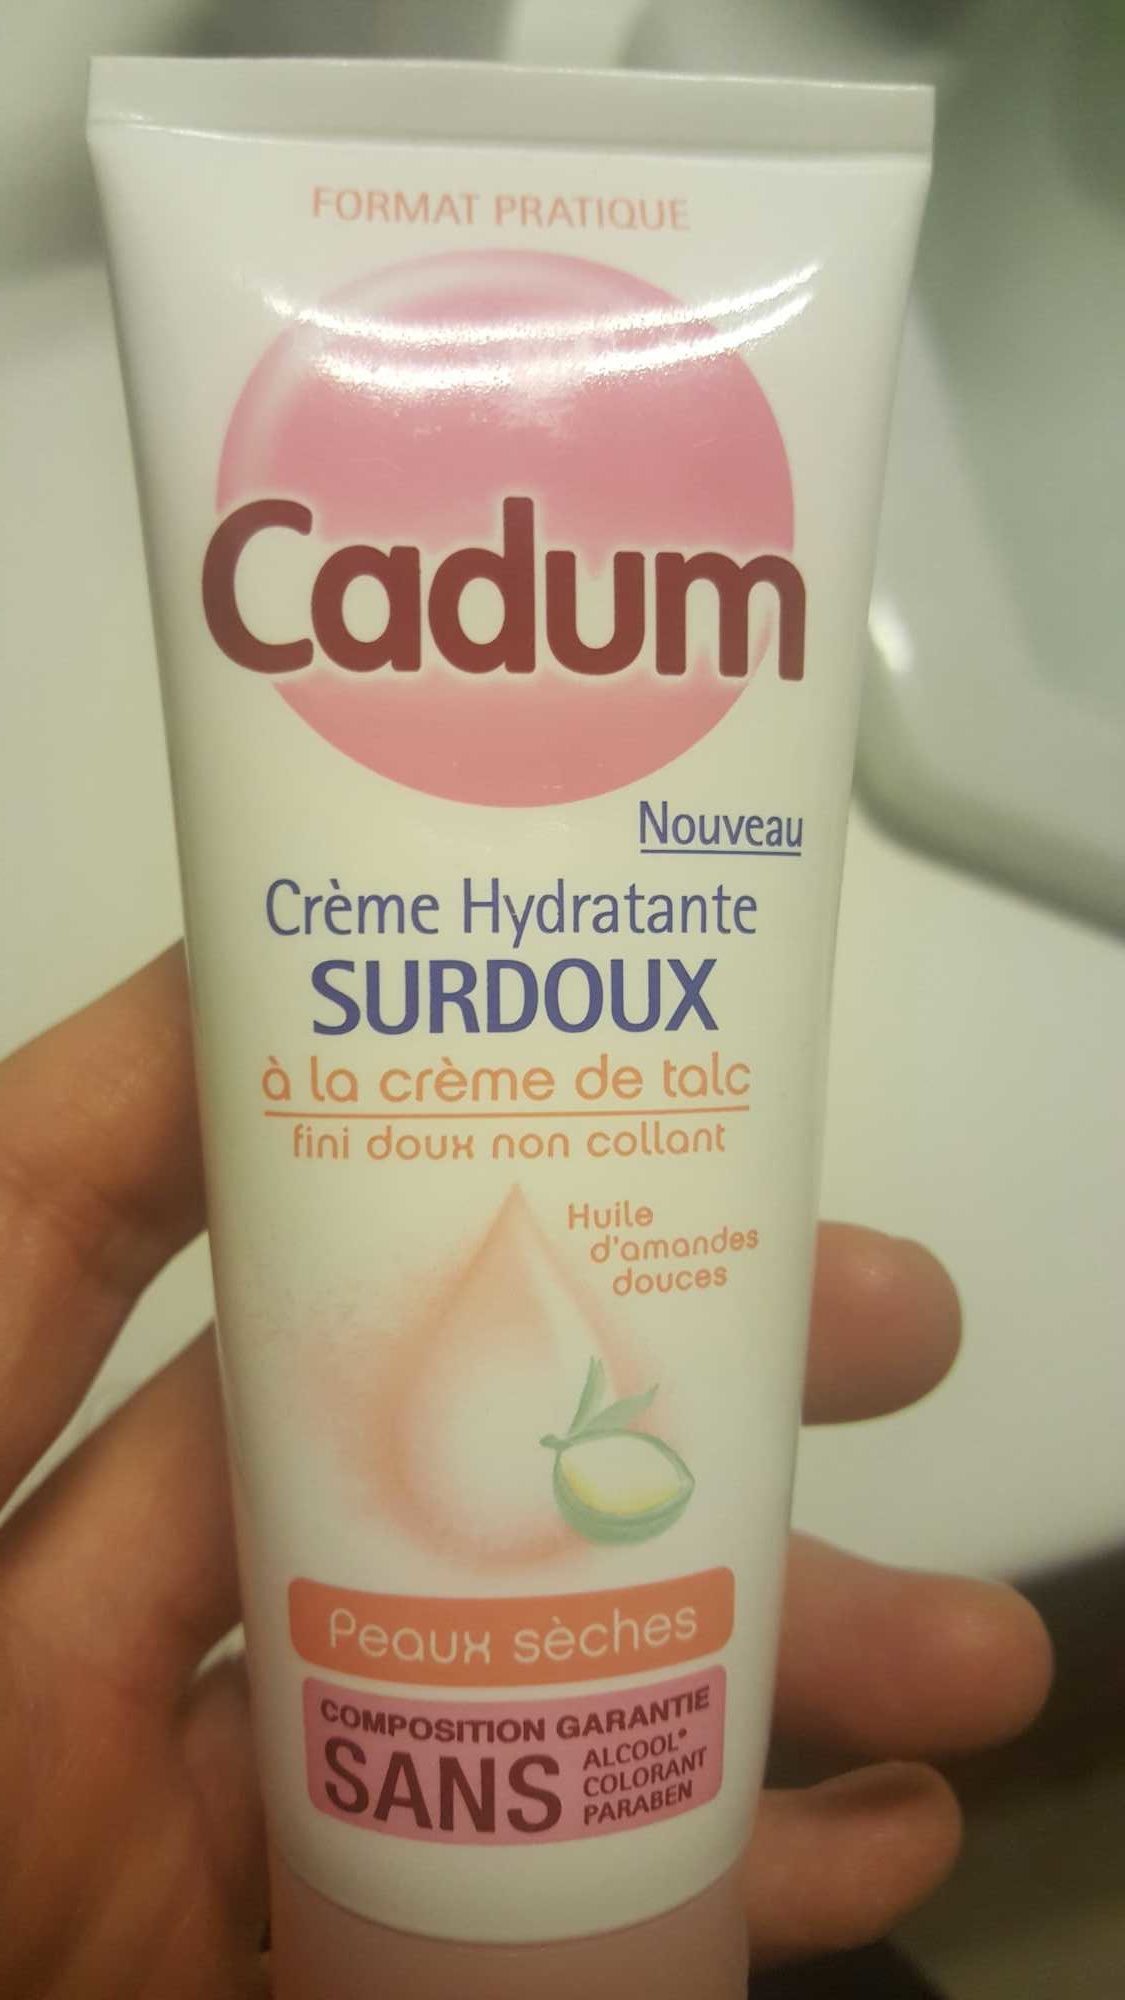 Crème hydratante surdoux à la crème de talc peaux sèches - 製品 - fr